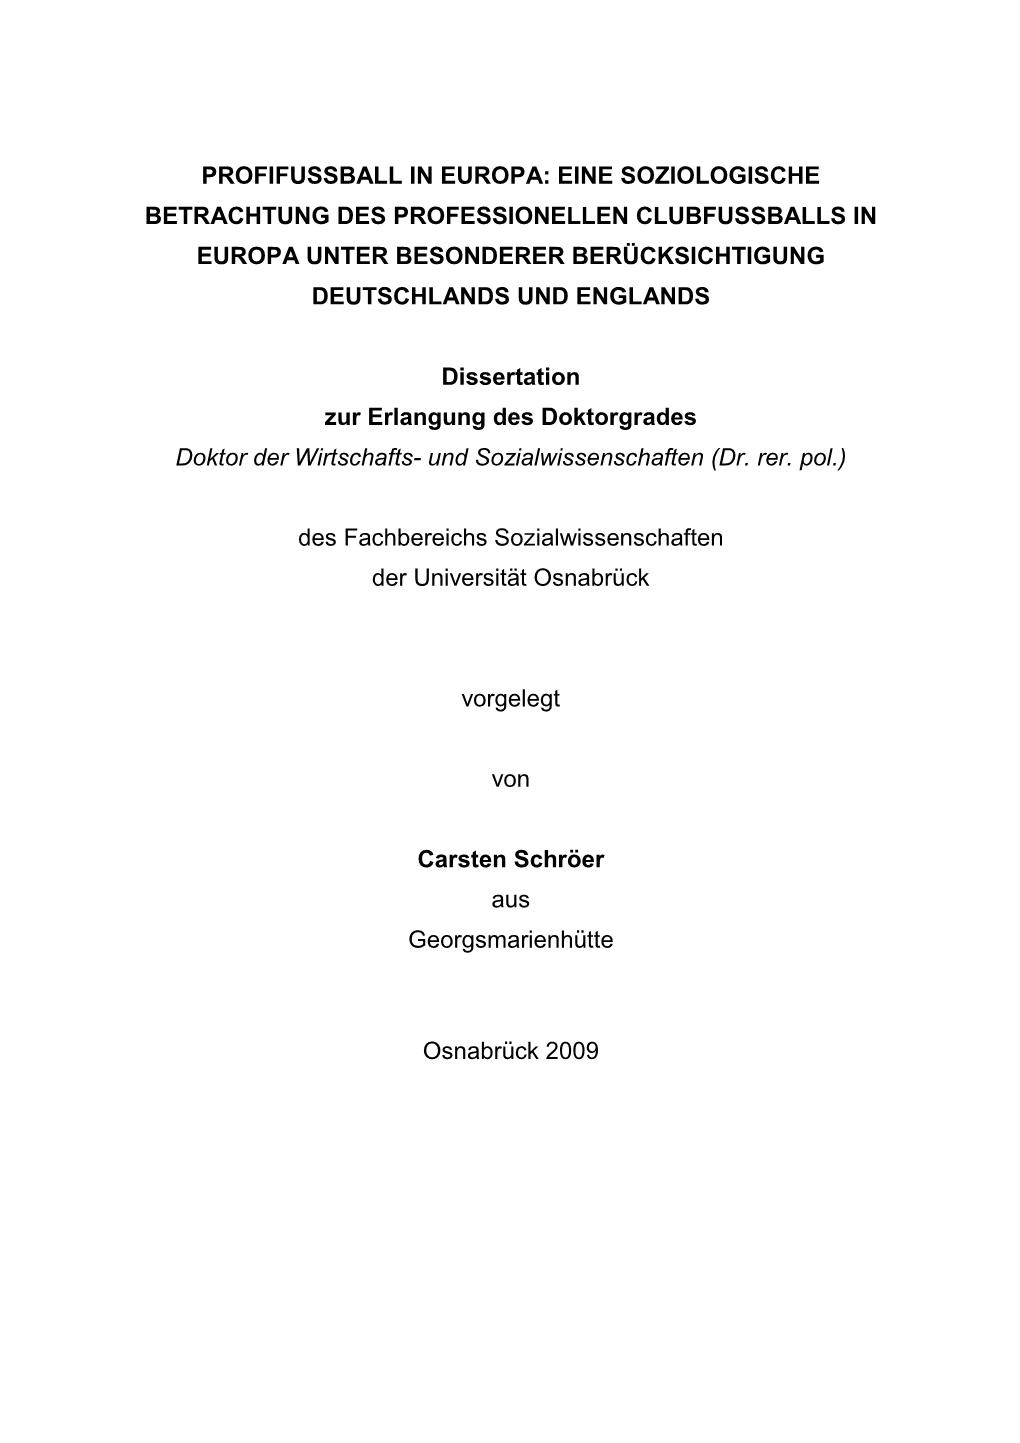 Dissertation Carsten Schröer Ohne Markierungen